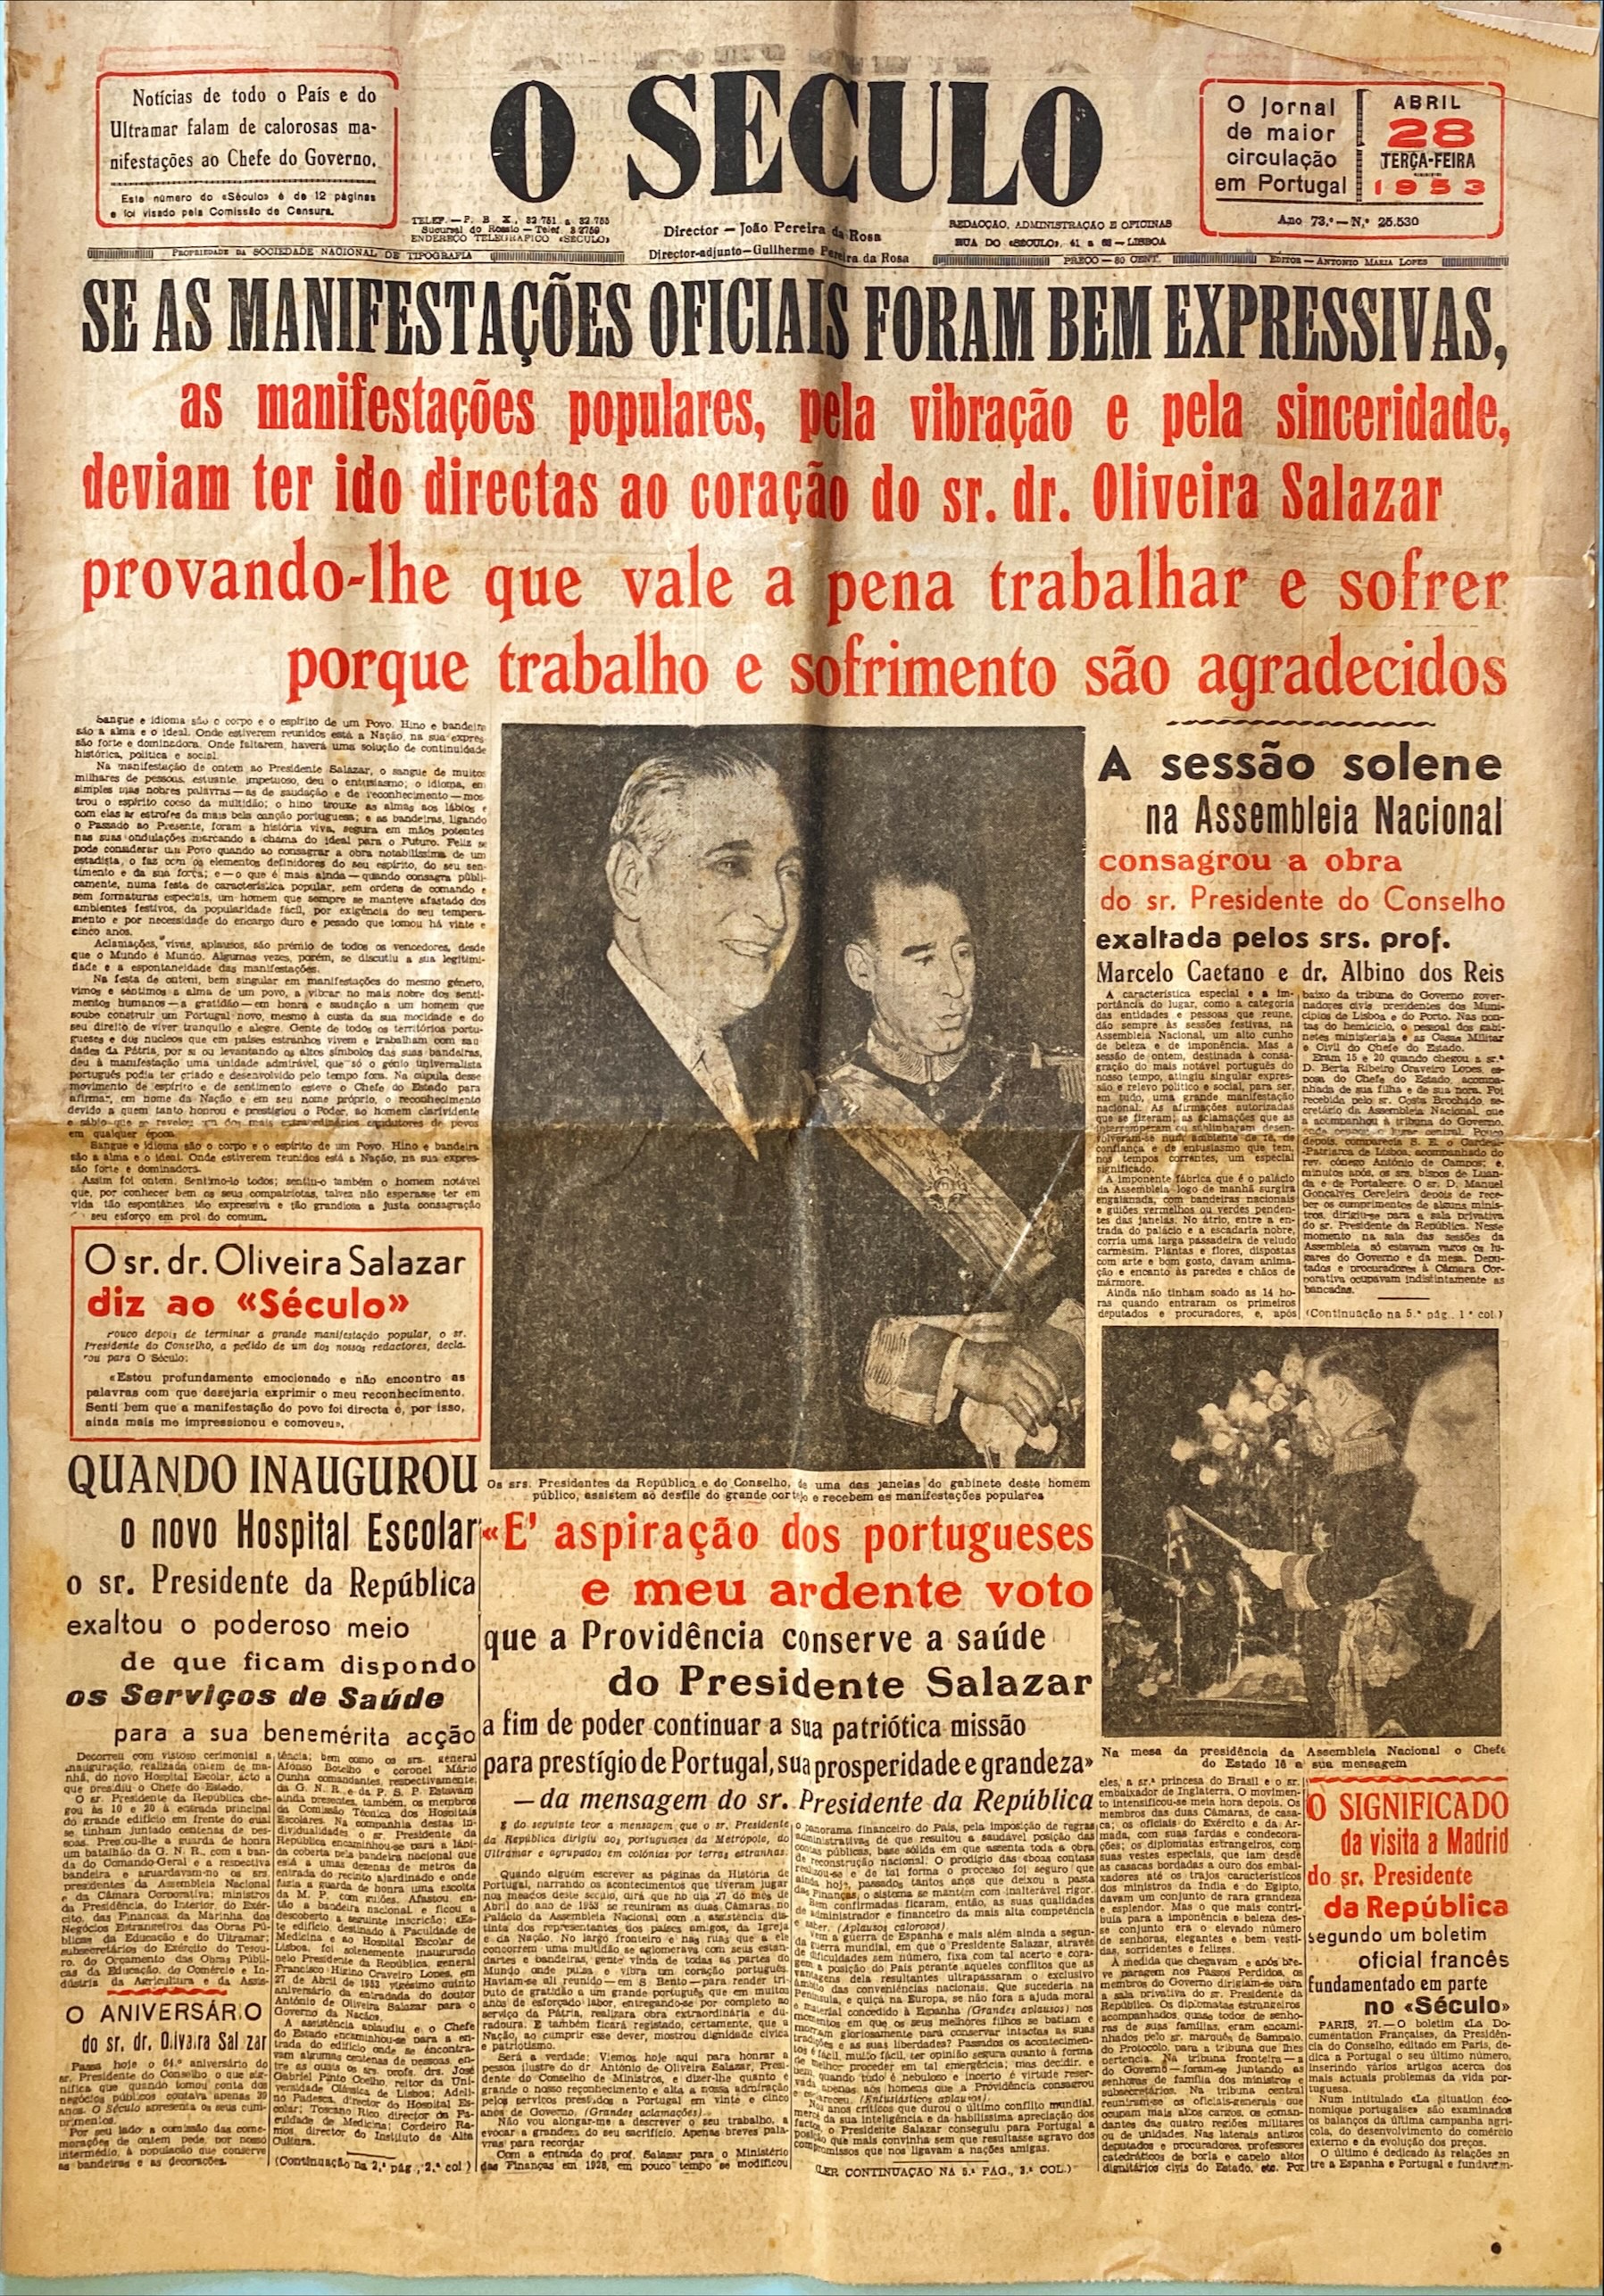 JORNAIS HISTÓRICOS – 25 ANOS DE GOVERNO DE SALAZAR (1953) – EPHEMERA imagem